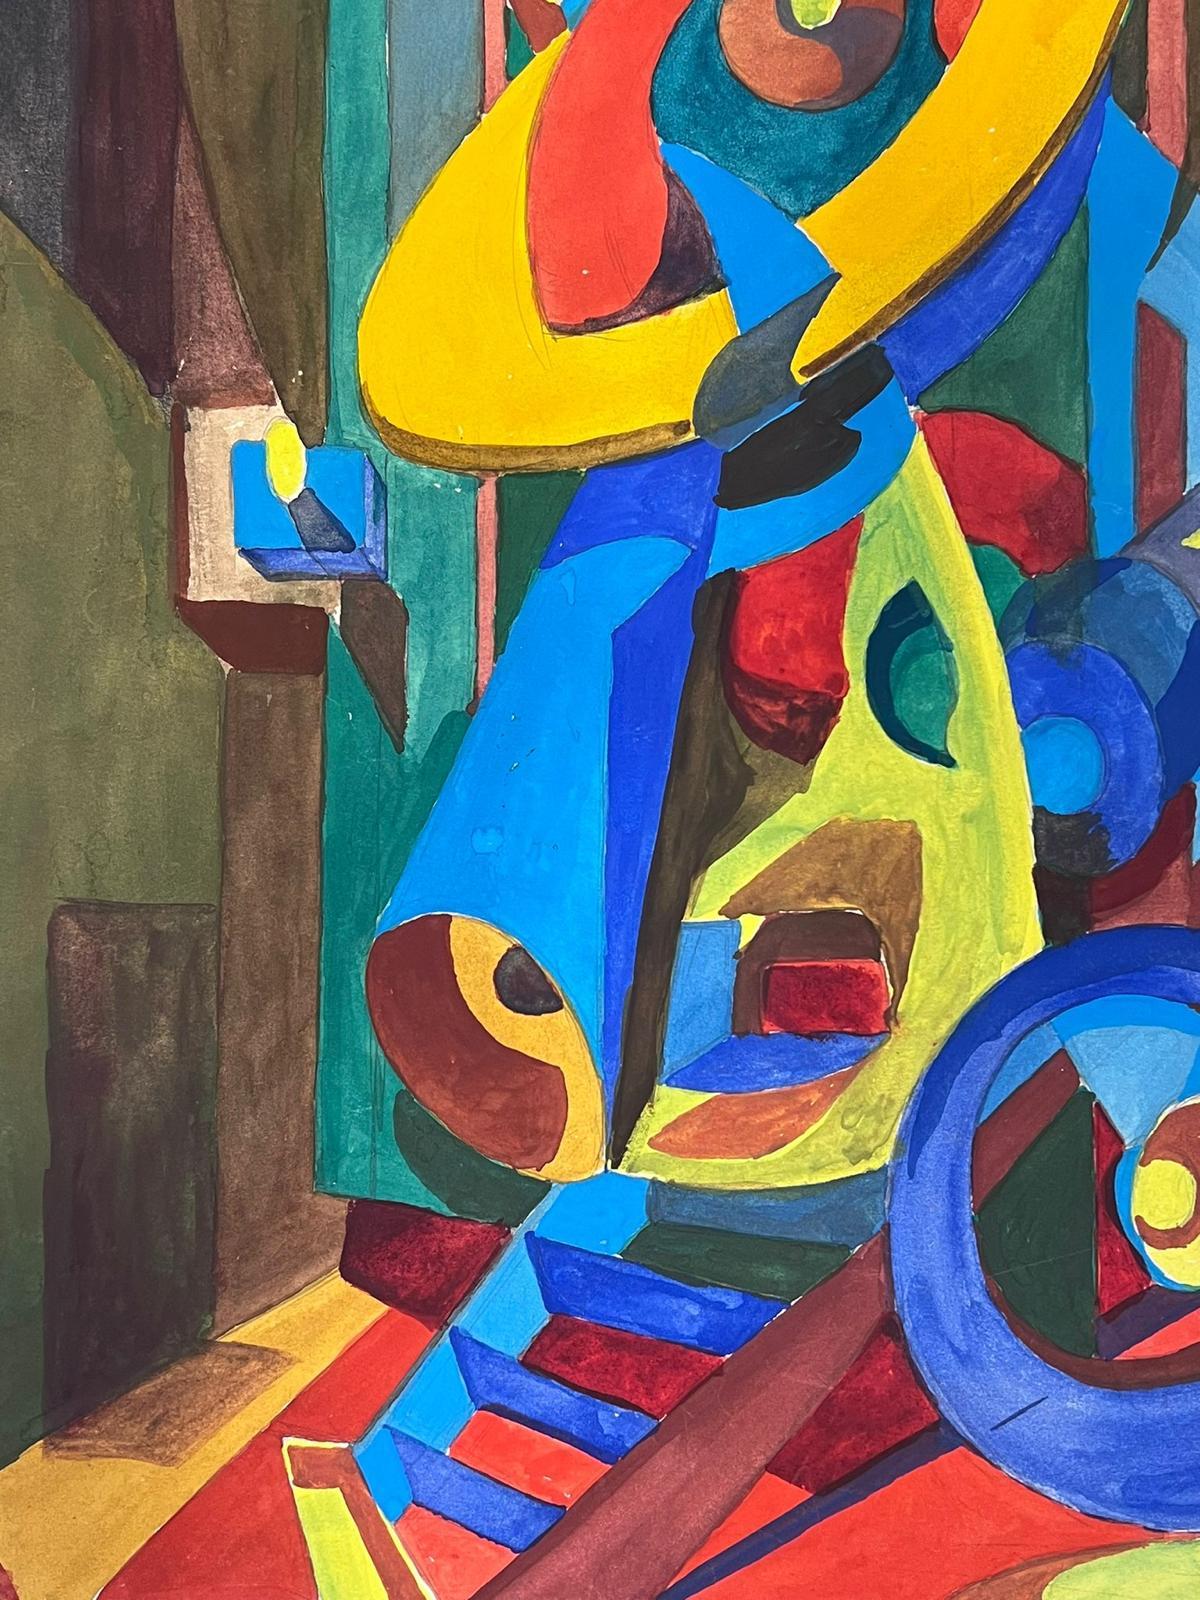 Abstrakte Komposition
von Guy Nicod
(Französisch 1923 - 2021)
Aquarell auf Künstlerpapier, ungerahmt
Gemälde : 20 x 14 Zoll
Herkunft: Künstlernachlass, Frankreich
Zustand: sehr guter und gesunder Zustand